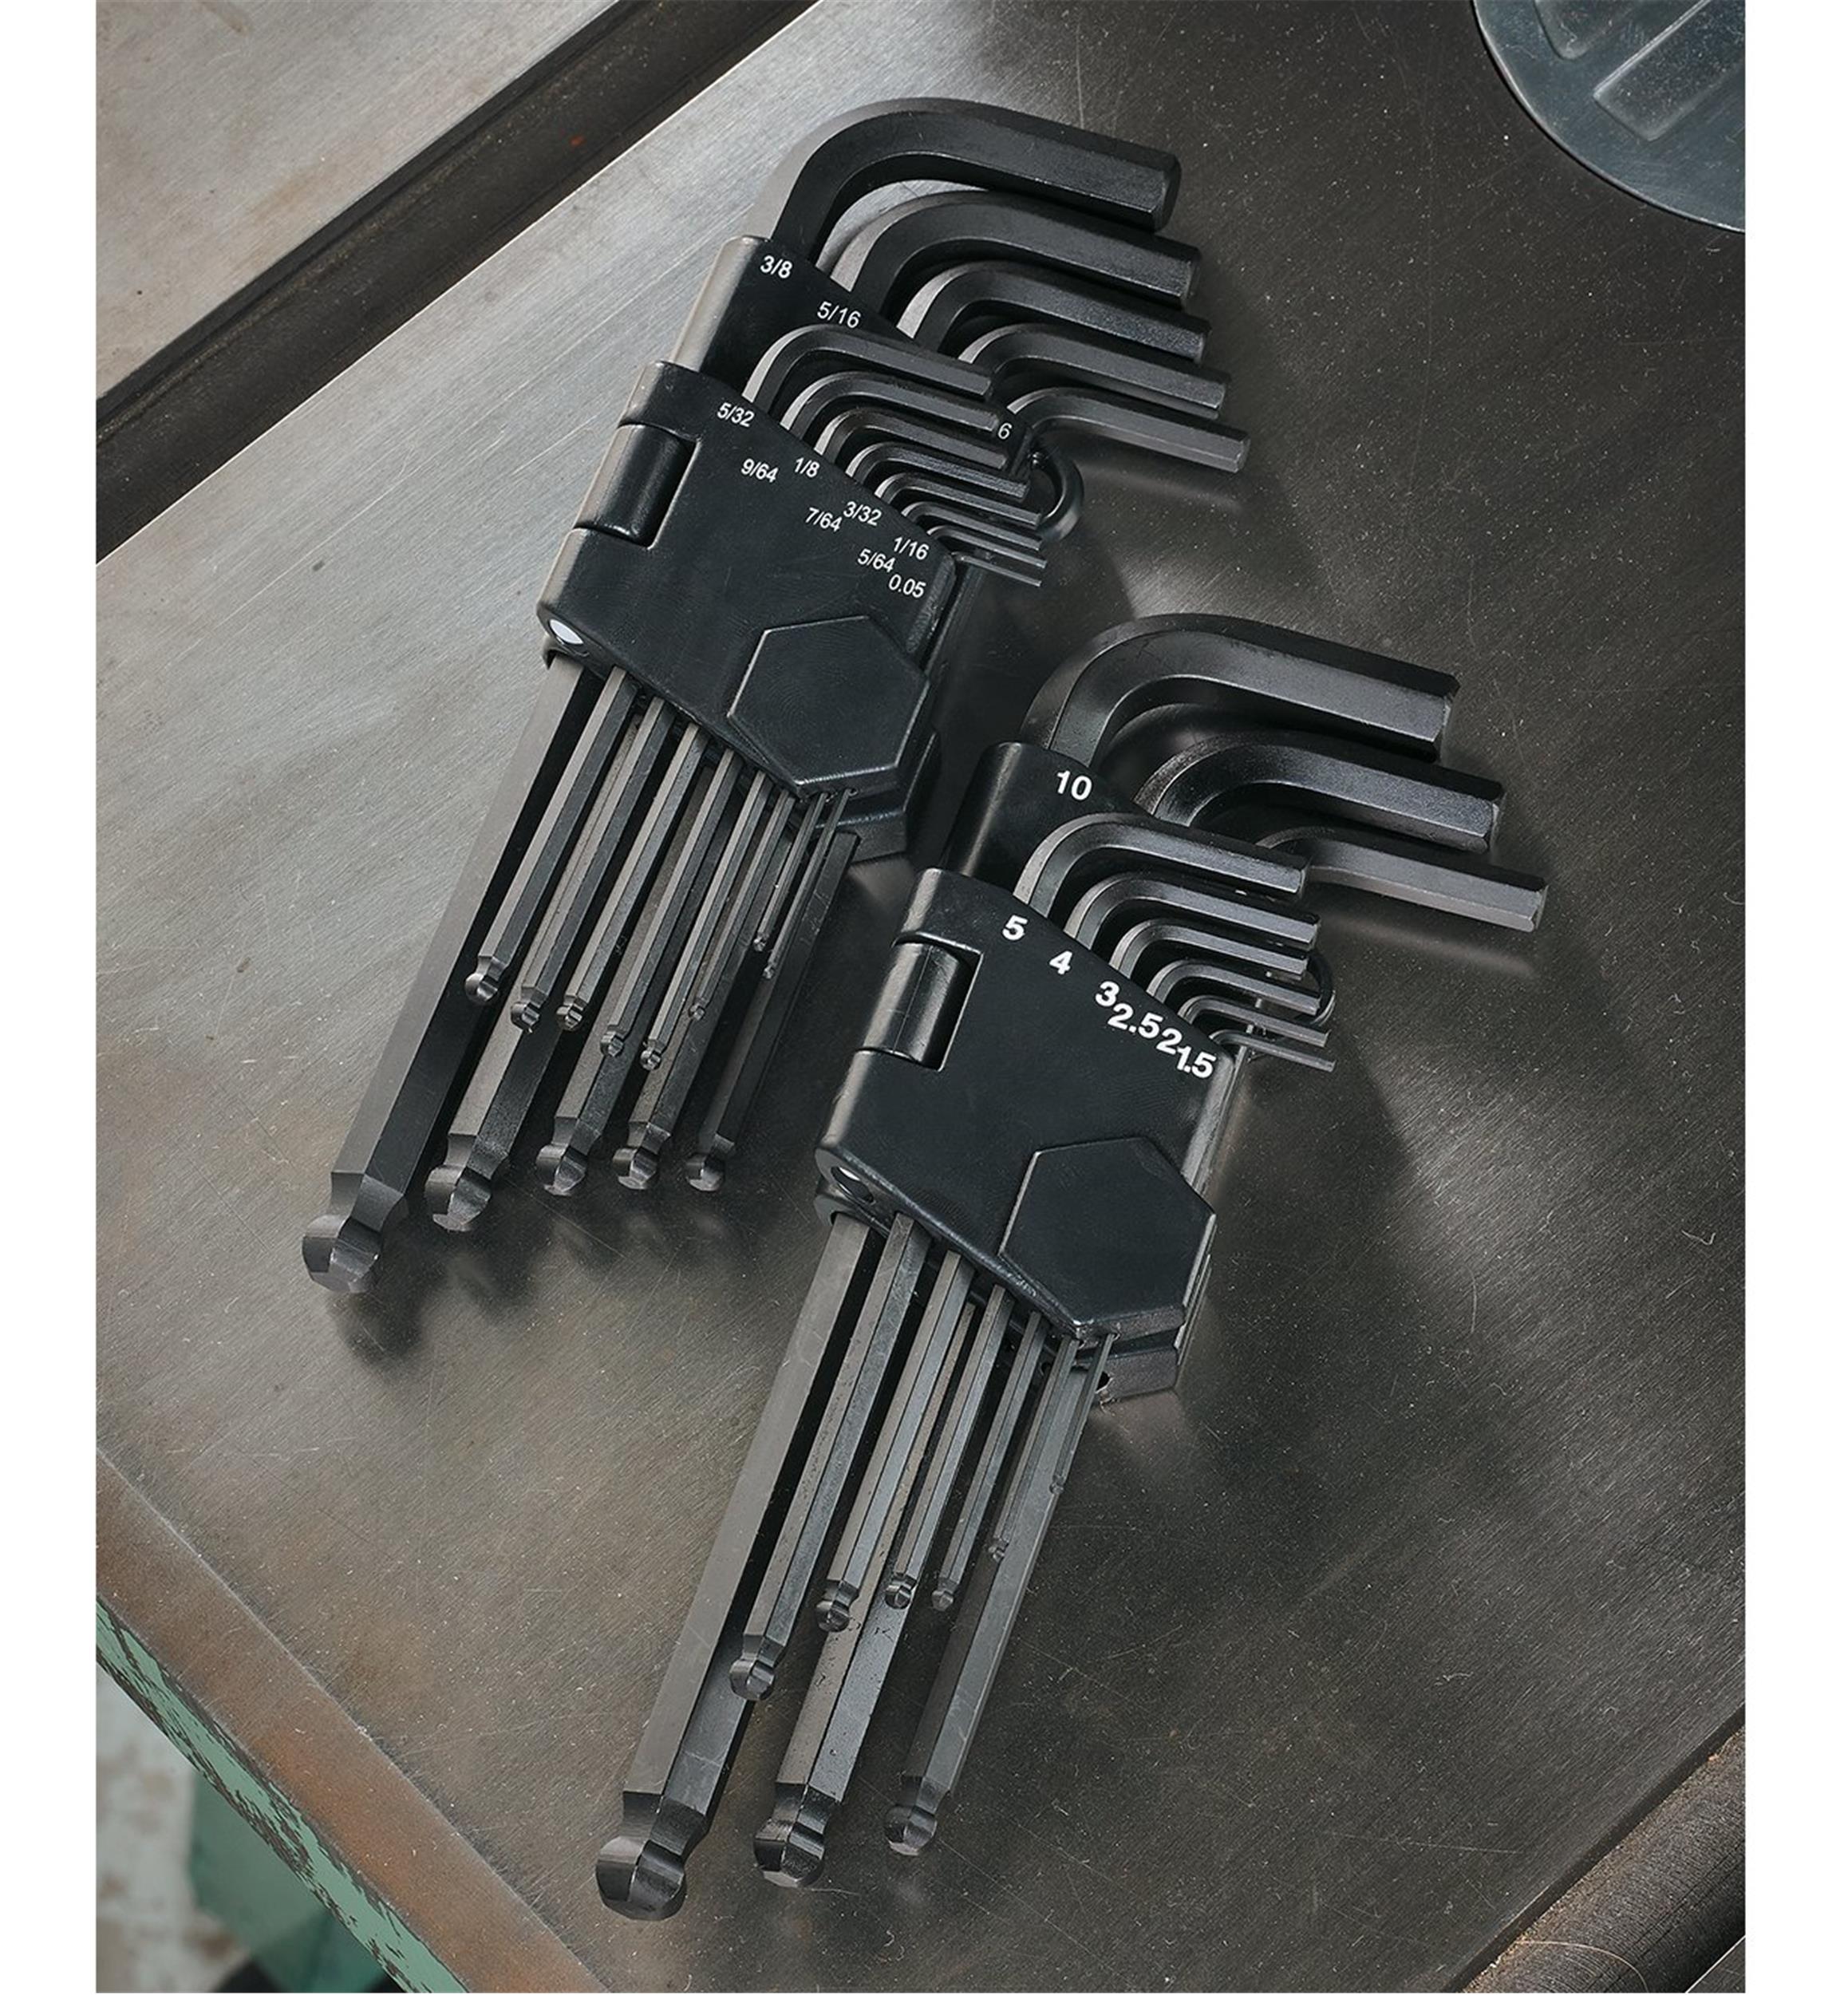 Allen Key Hex Key LONG IMPERIAL 1/2 inch Hexagonal Wrench Key Keys 911-LI